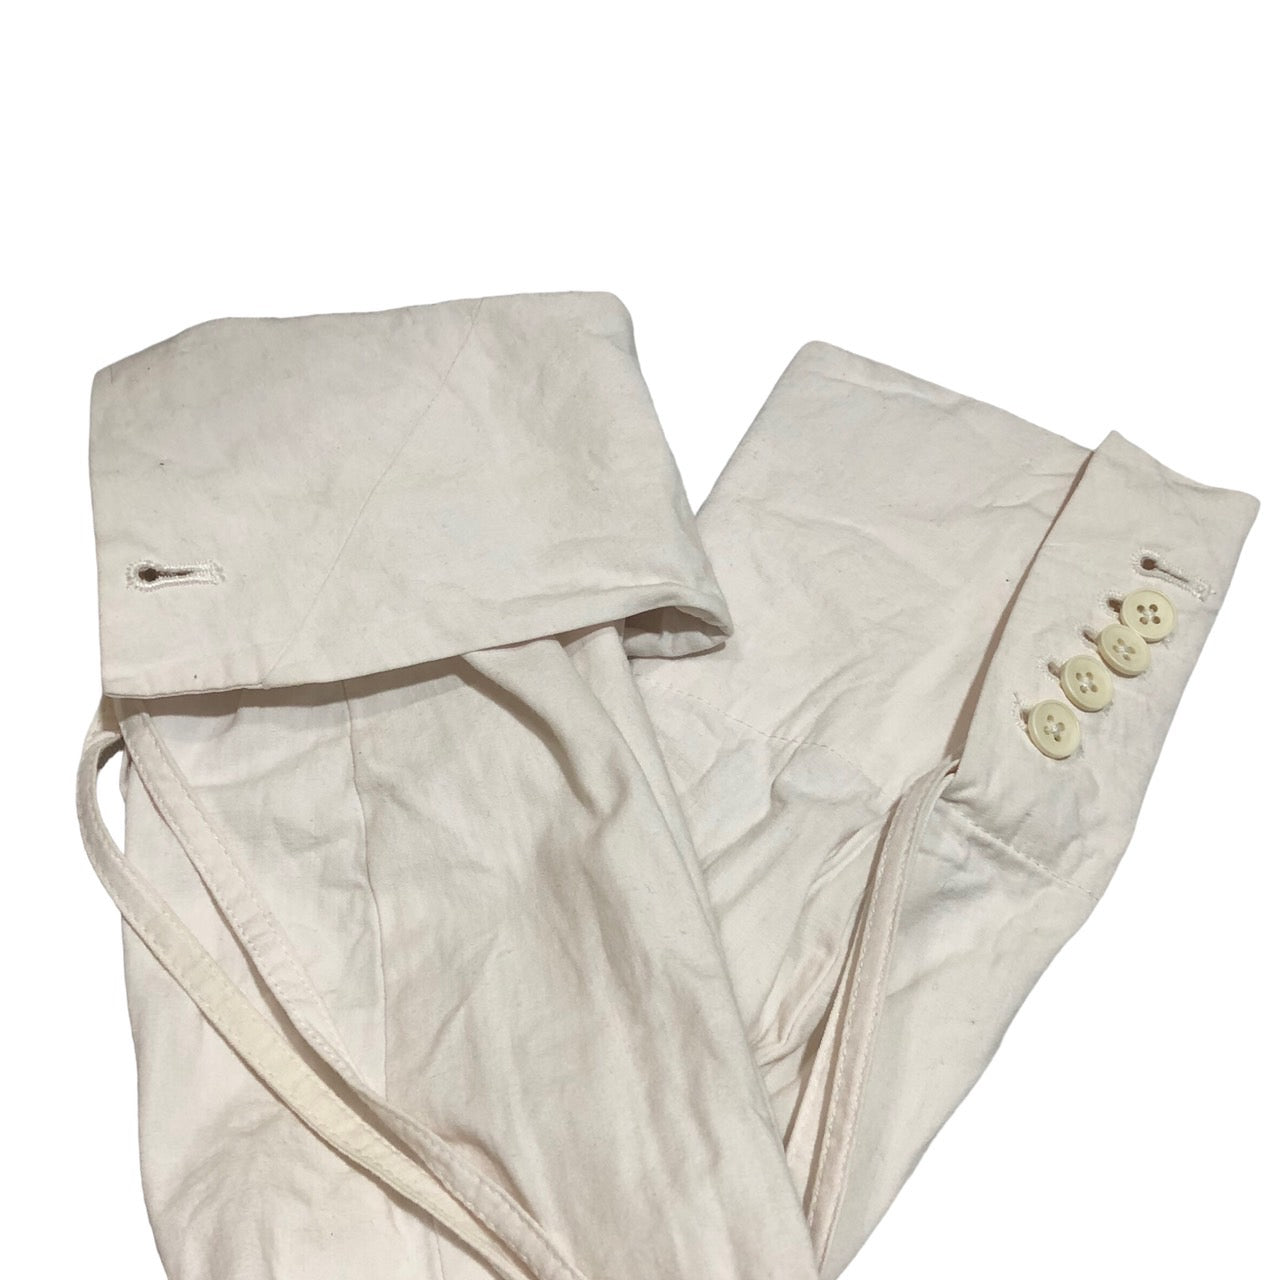 Y's for men(ワイズフォーメン) 90's ~ 00's cotton bondage jacket コットン ボンテージ ジャケット SIZE 1(S~M程度) オフホワイト